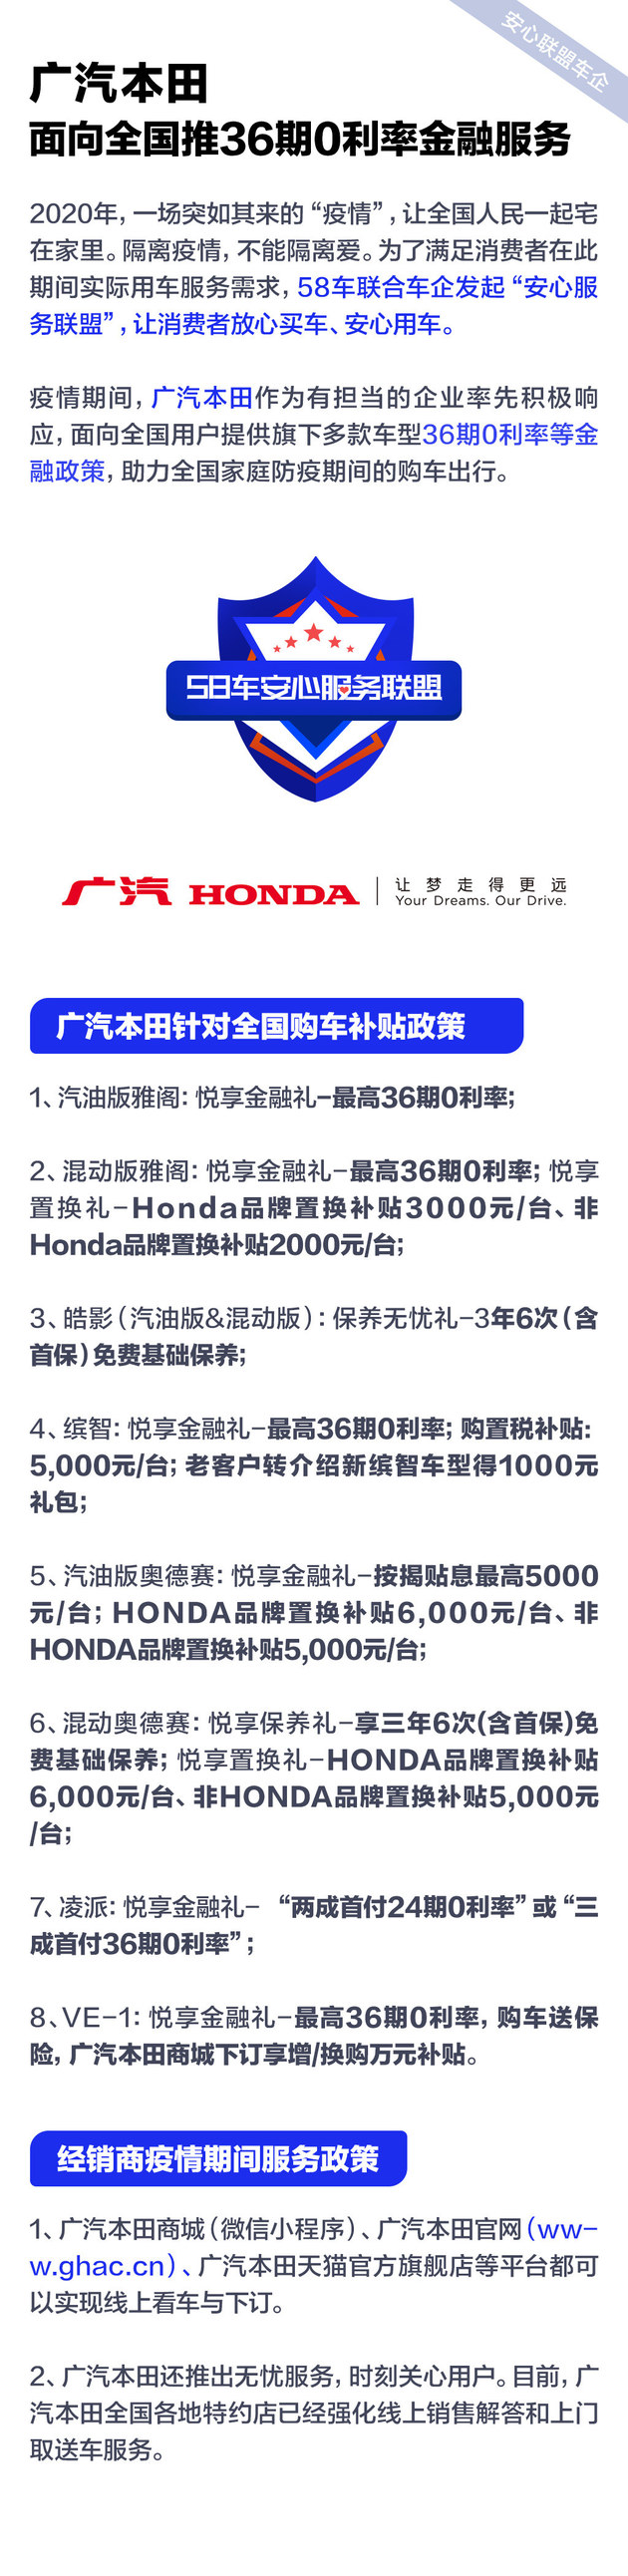 广汽本田 面向全国推36期0利率金融服务